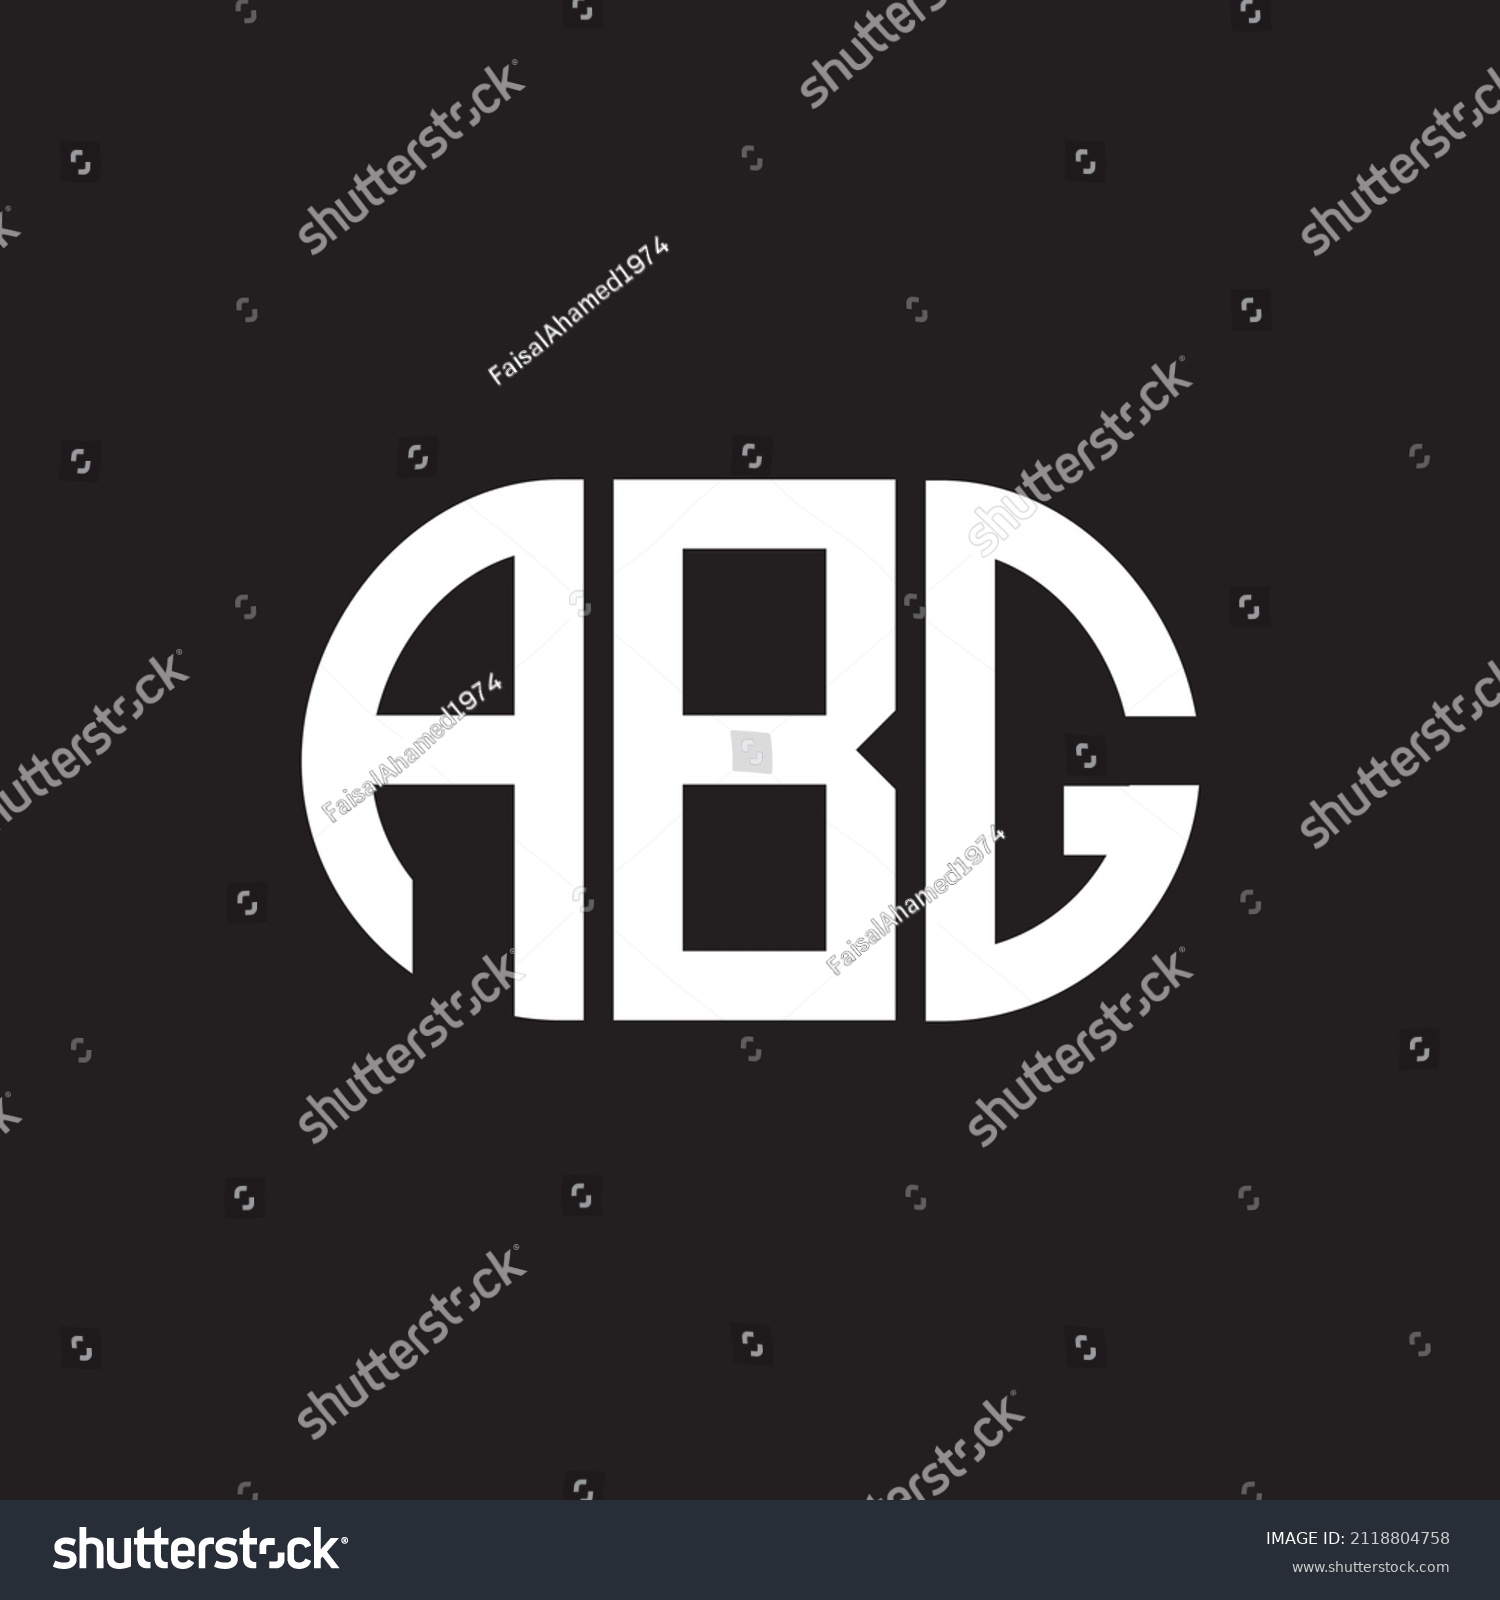 SVG of ABG letter logo design on black background. ABG creative initials letter logo concept. ABG letter design.
 svg